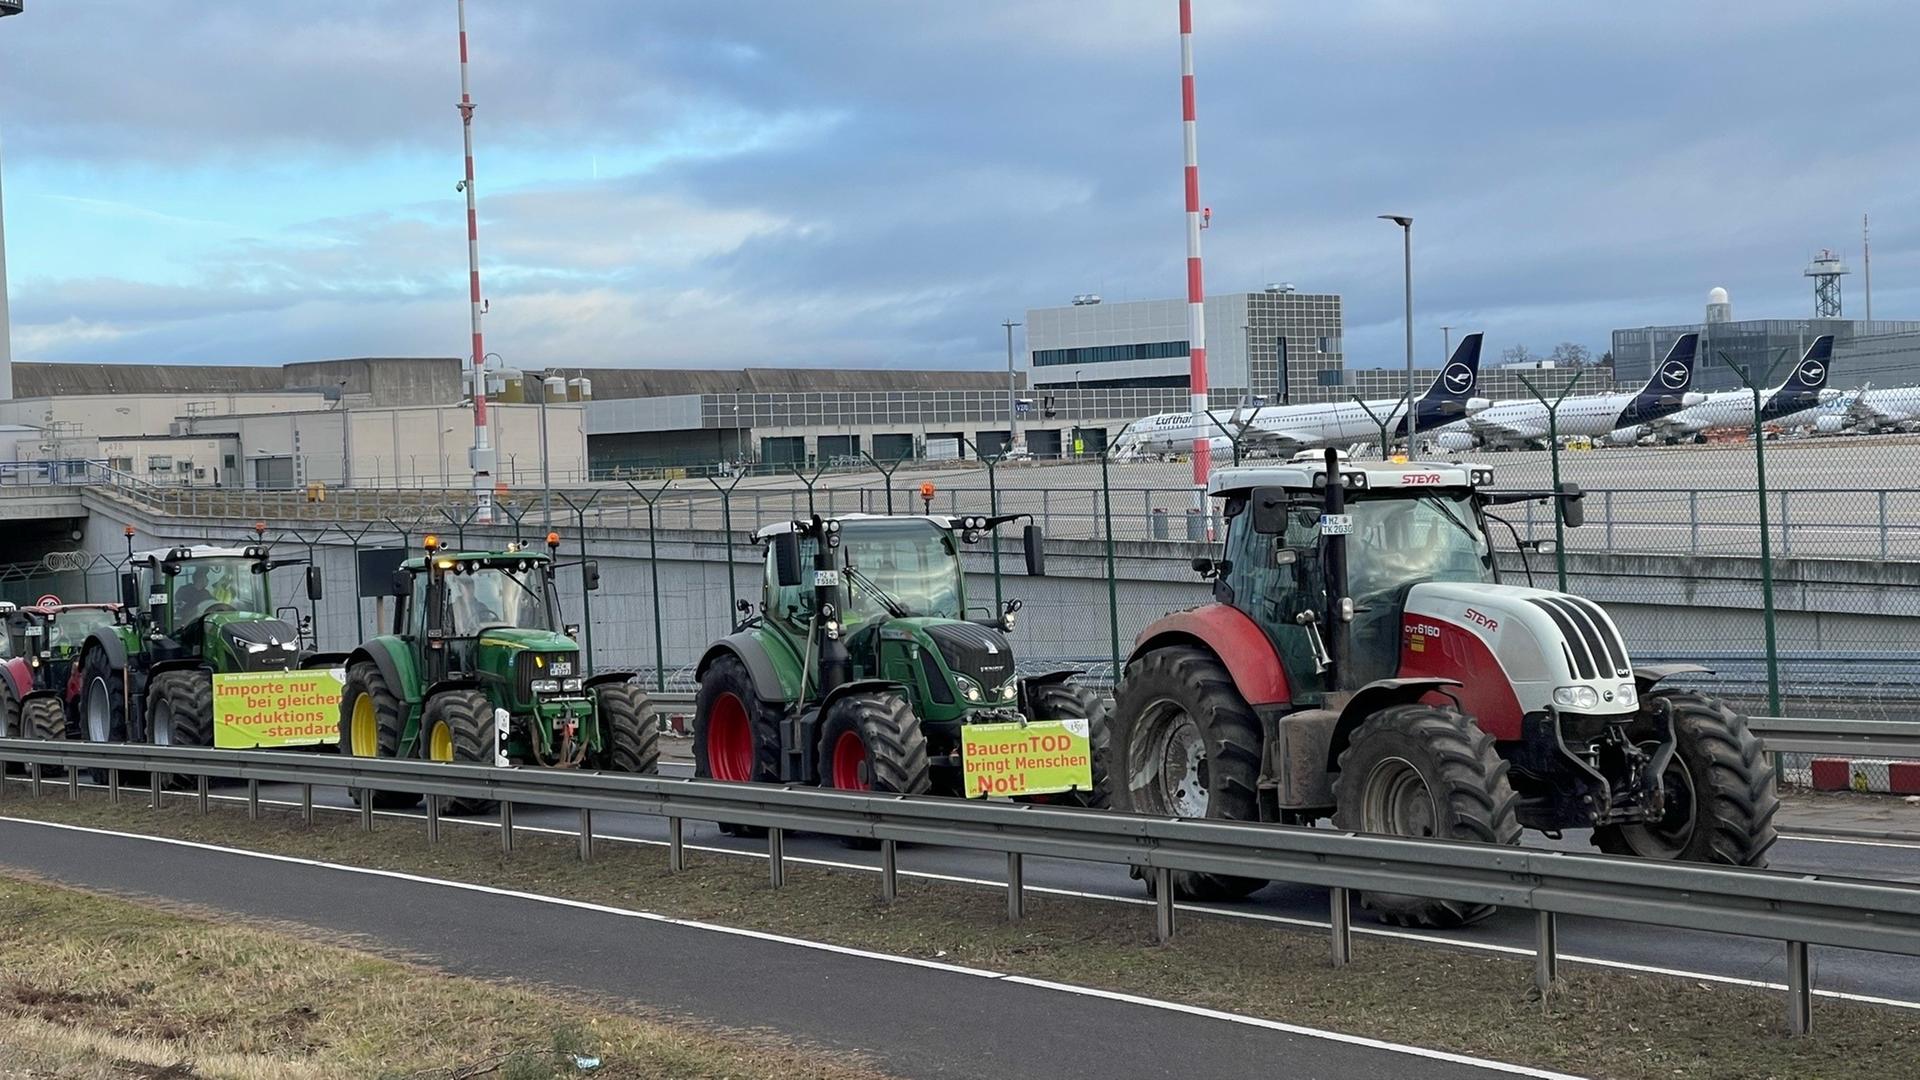 Traktoren fahren auf einer Straße am Flughafen Frankfurt vorbei. Im Hintergrund sind Flugzeuge zu sehen.